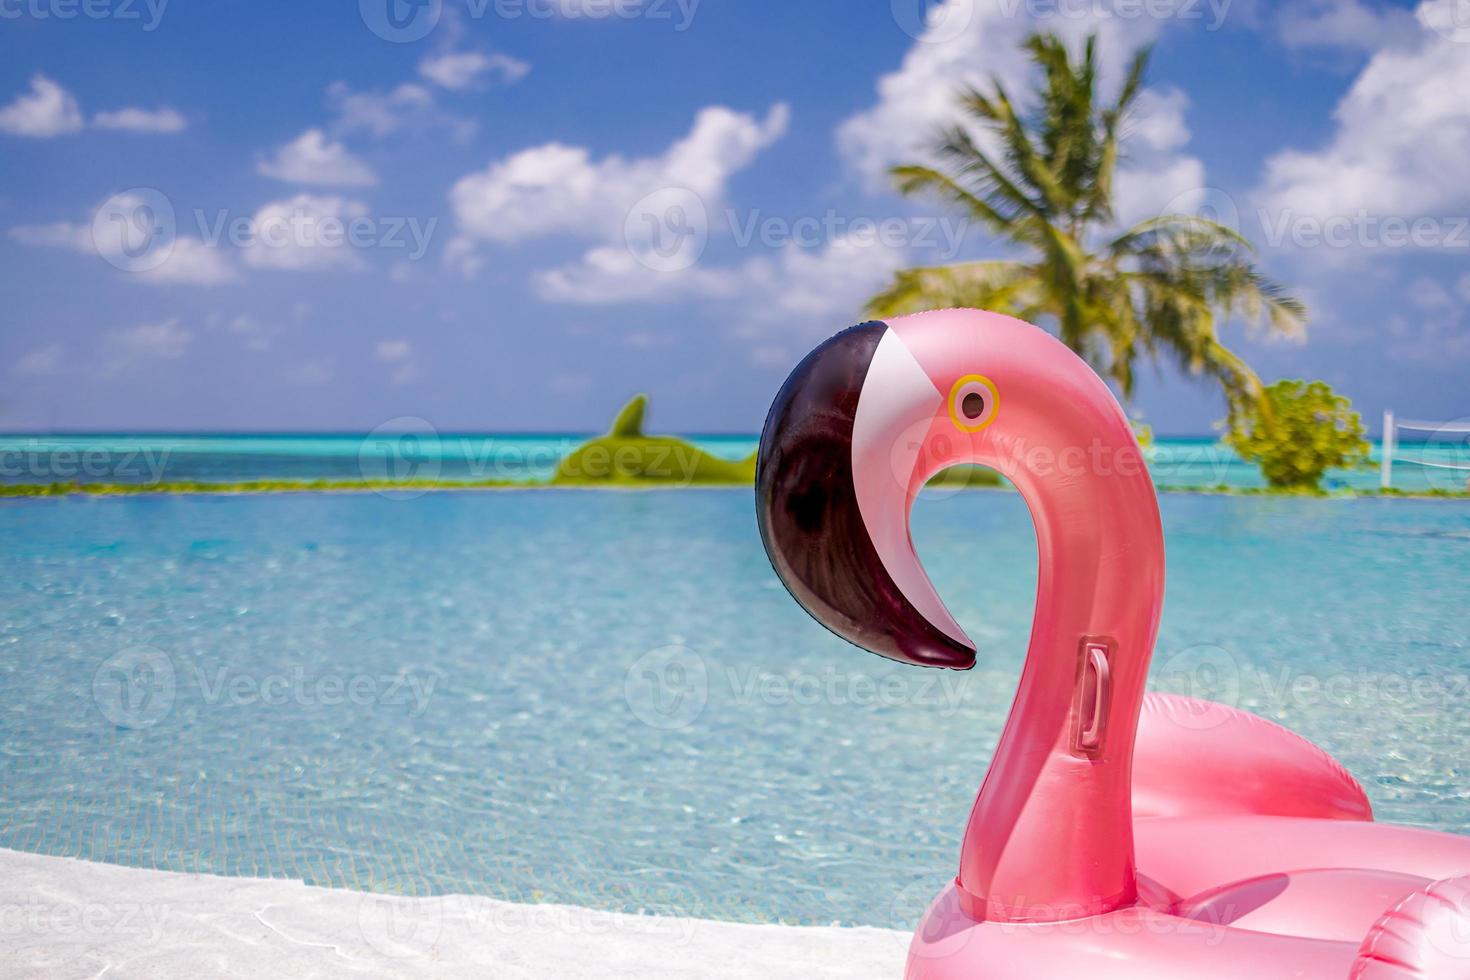 sommerschwimmbad mit aufblasbarem rosa flamingo, luxusresorthotel am pool. glücklicher blauer bewölkter himmel, tropische paradiesinsel unendlichpool meerblick. urlaub, urlaubsspaß landschaft. Freizeit entspannen foto